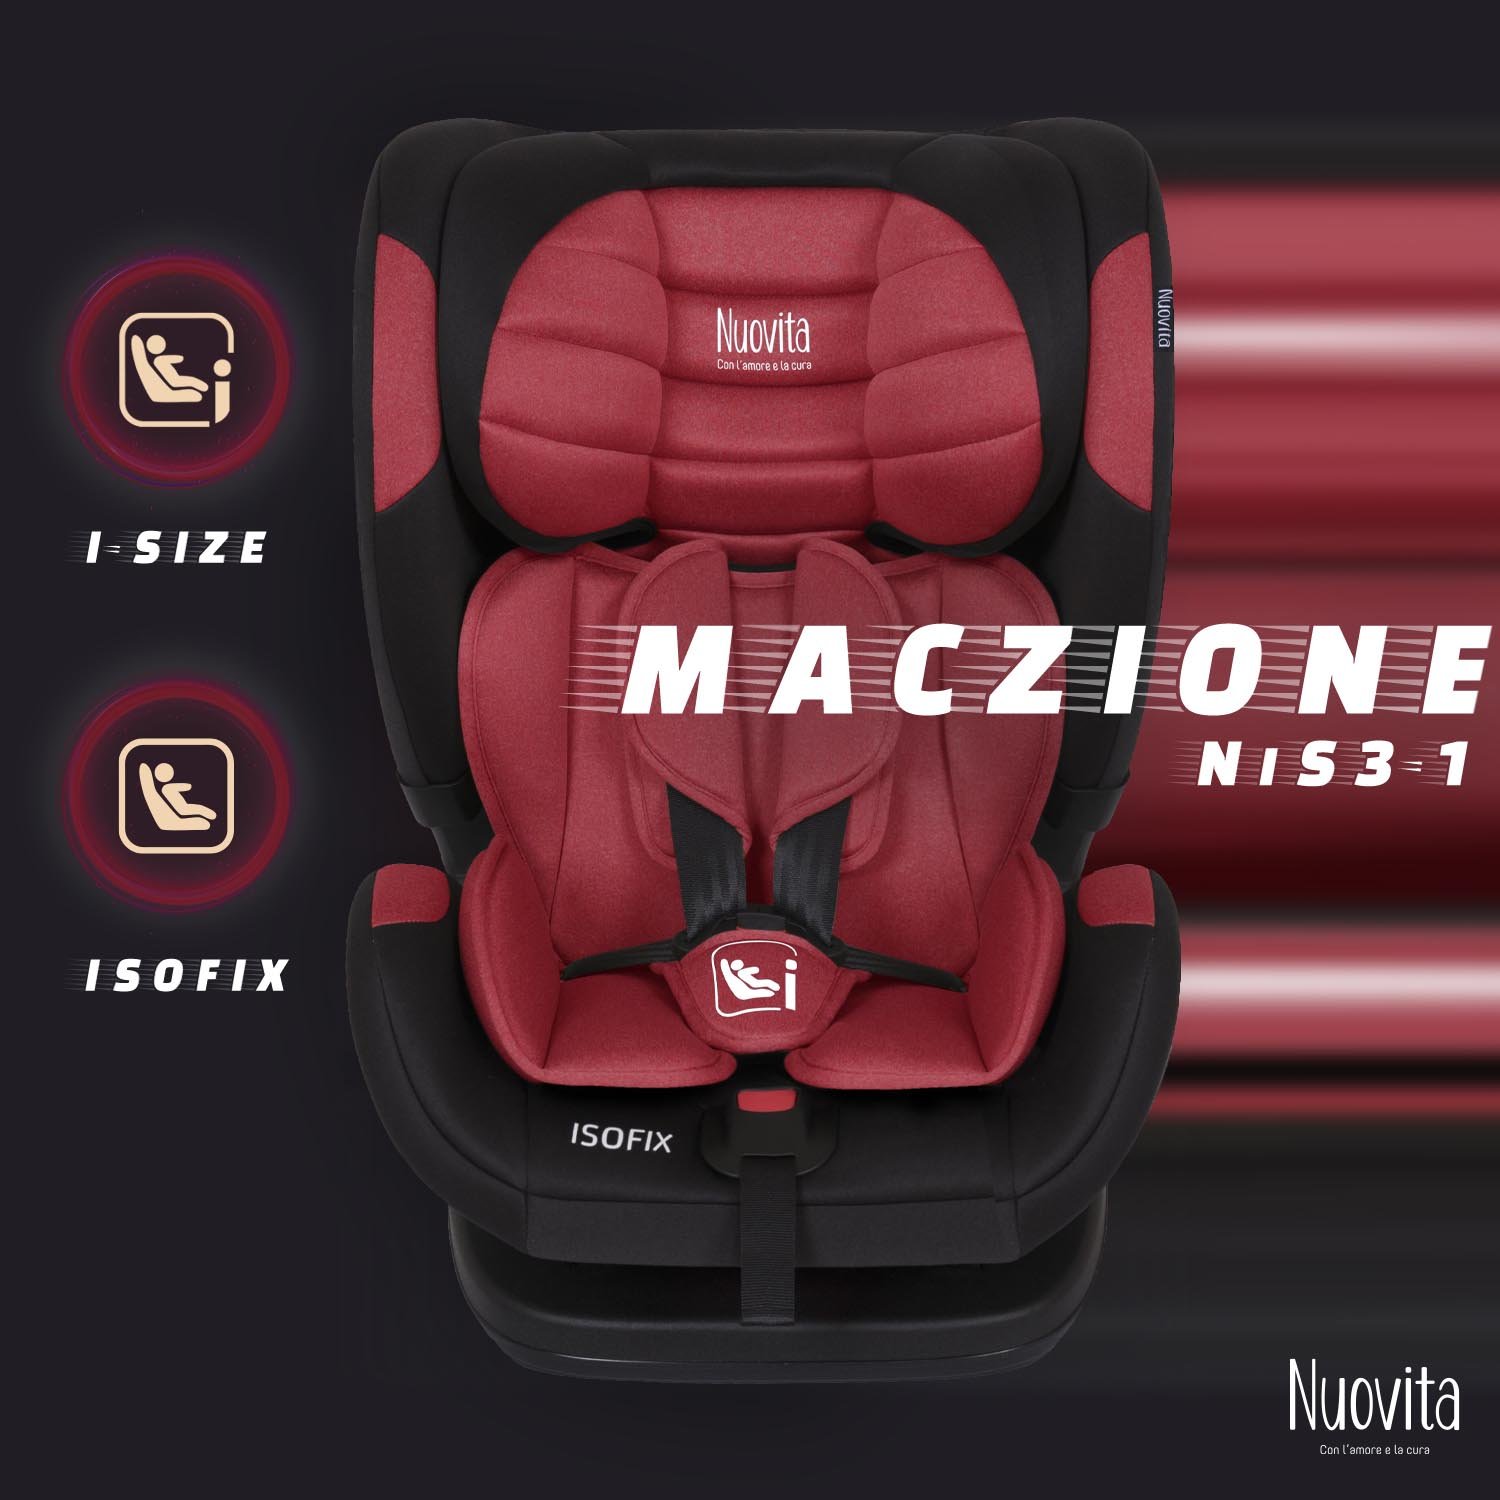 Детское автокресло Nuovita Maczione NiS3-1, Isofix, группа 1,2,3, 9-36 кг (Красный) автокресло nuovita maczione n0123i 1